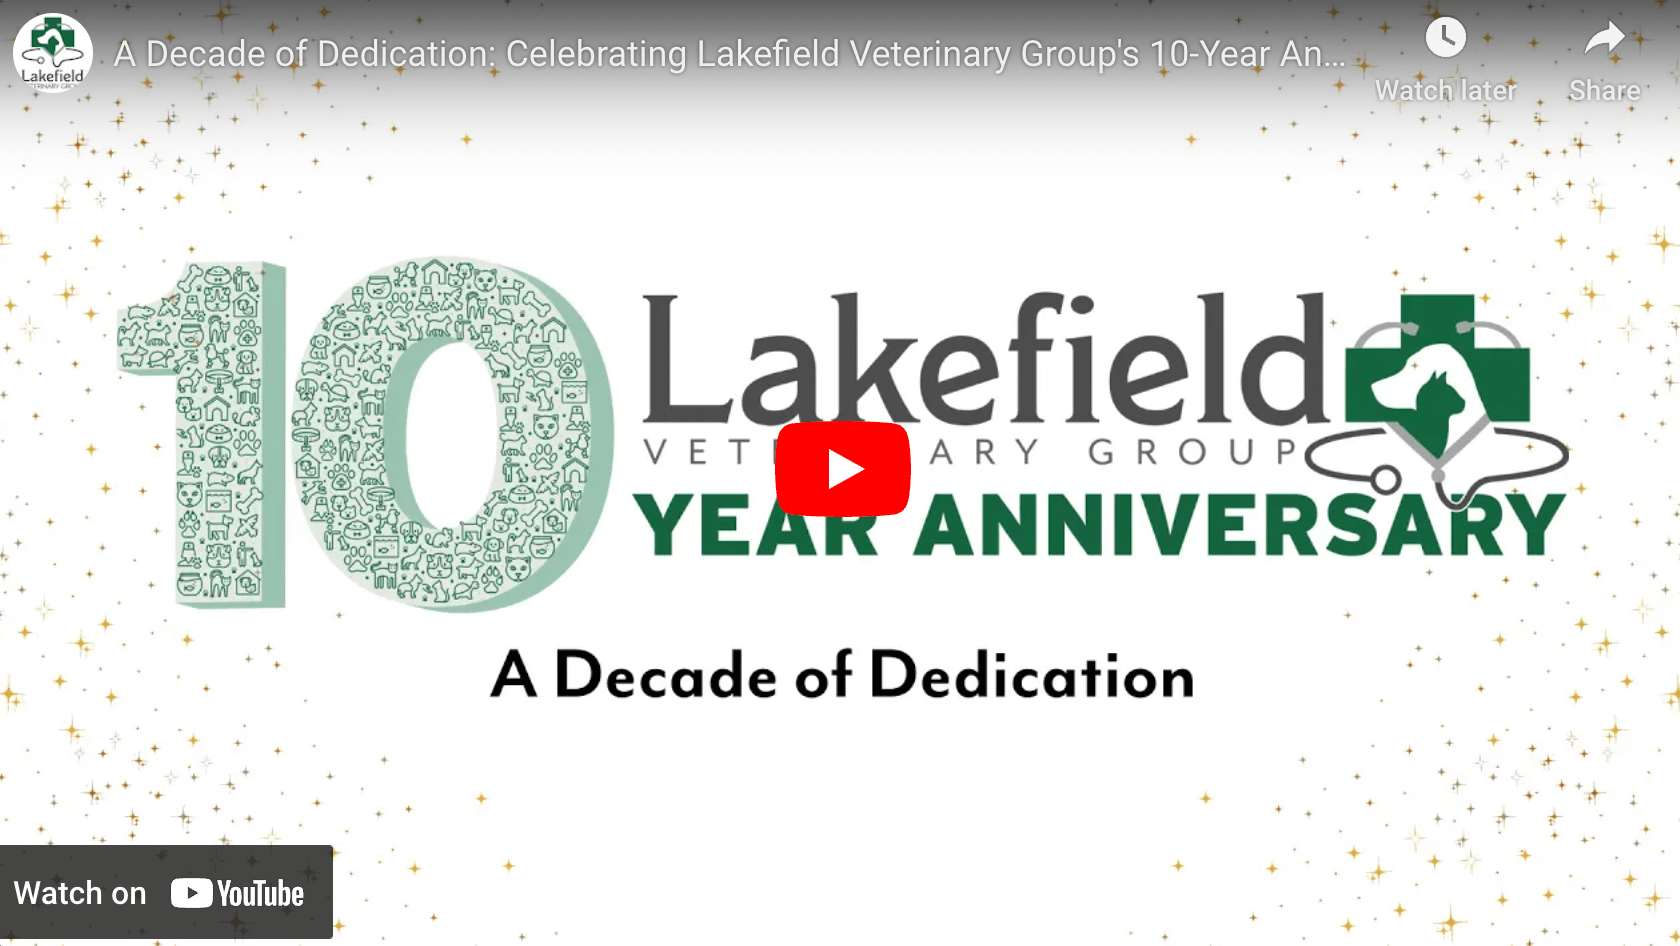 Lakefield's 10-Year Anniversary